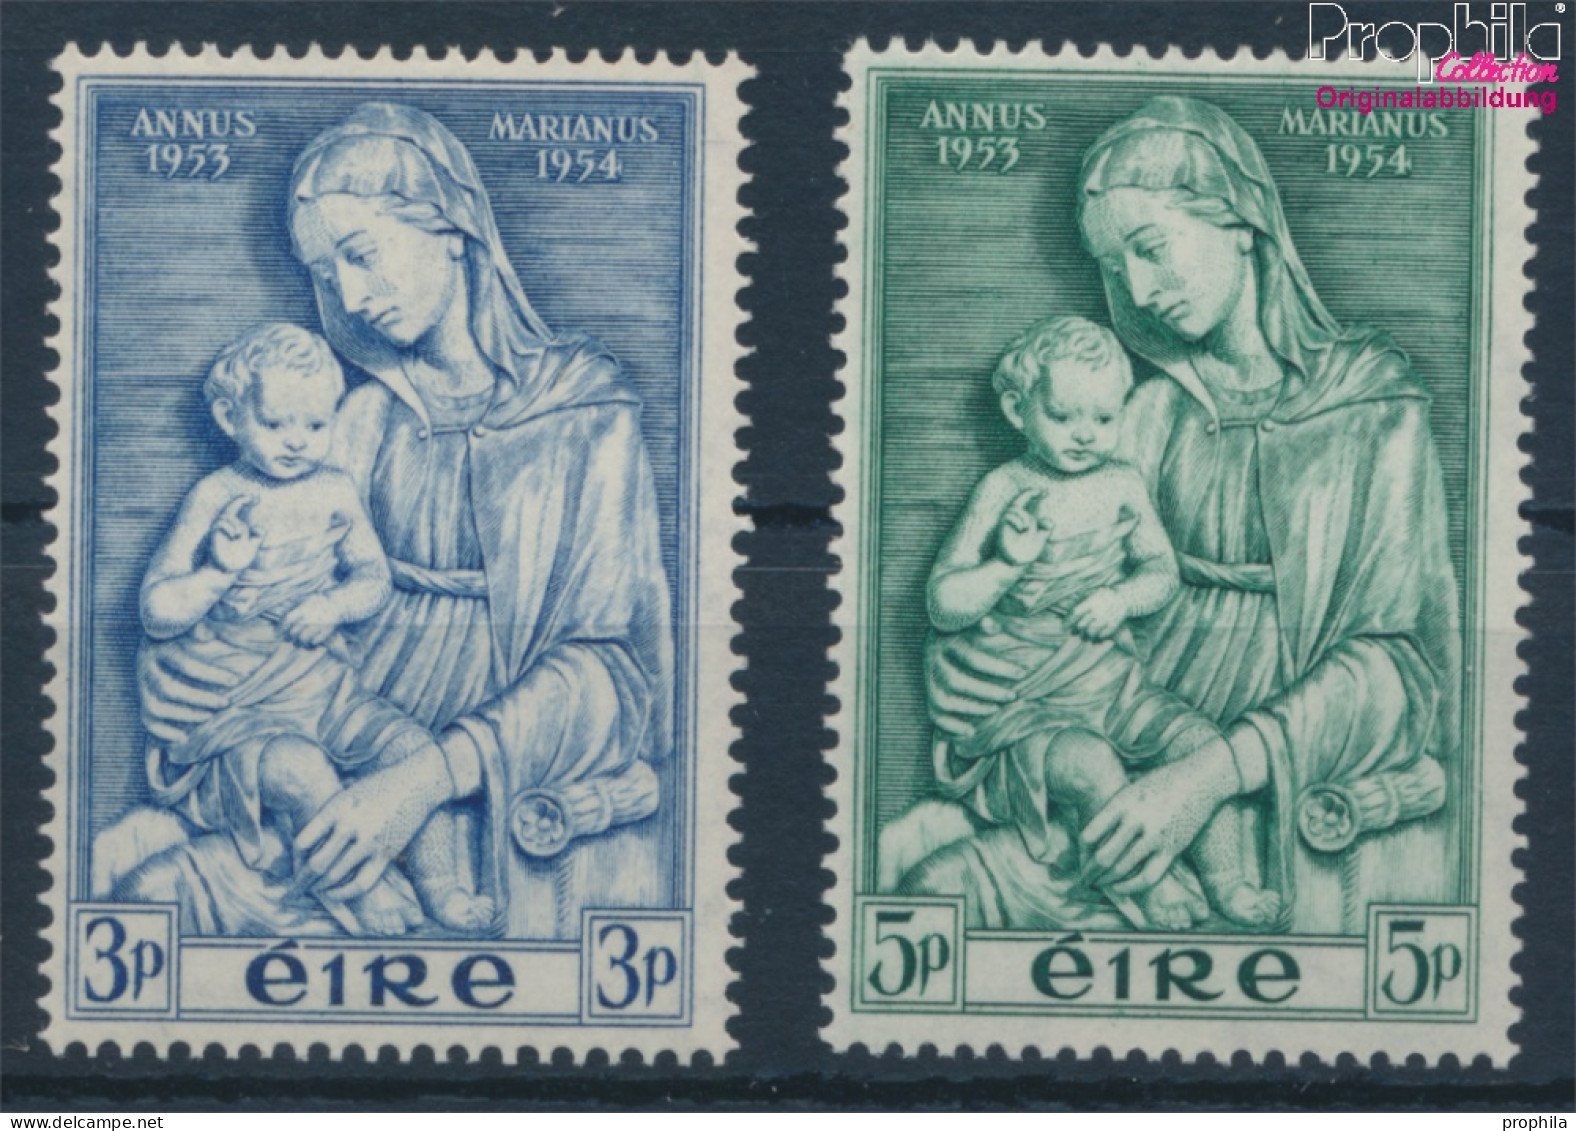 Irland 120-121 (kompl.Ausg.) Postfrisch 1954 Marianisches Jahr (10398343 - Ungebraucht